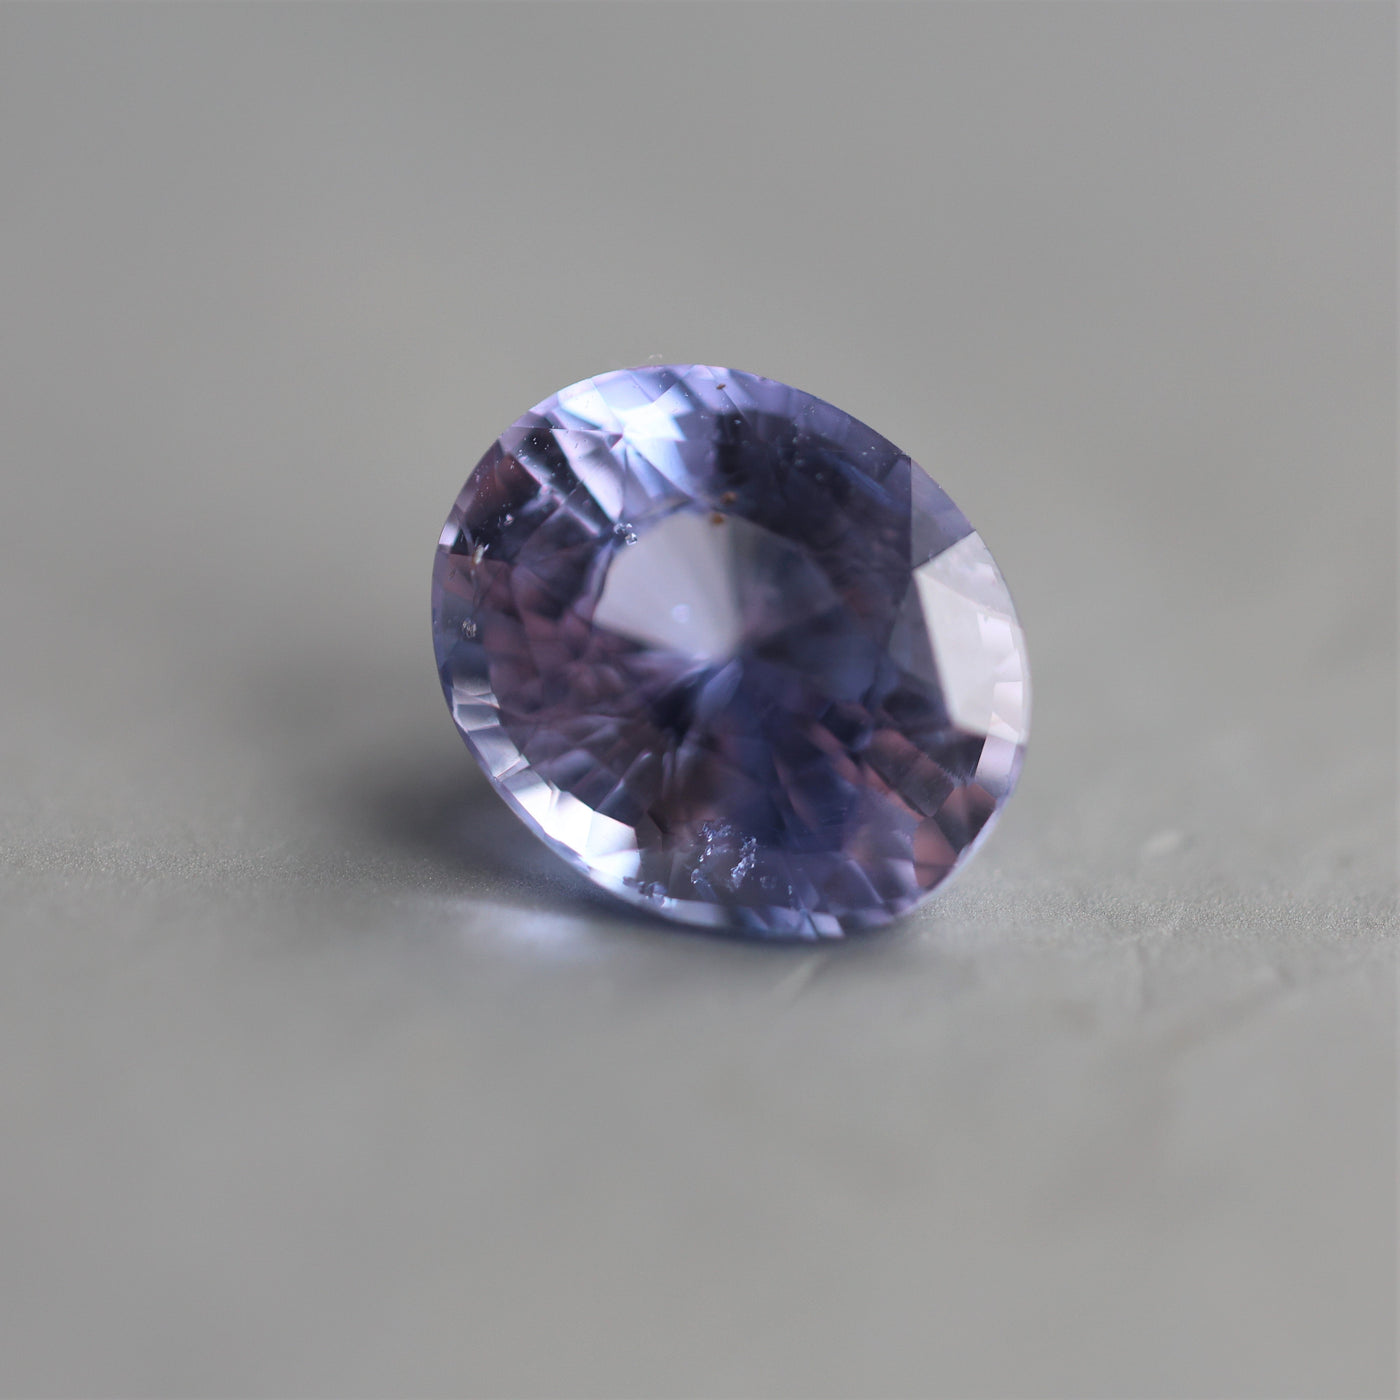 Loose oval-shaped purple sapphire